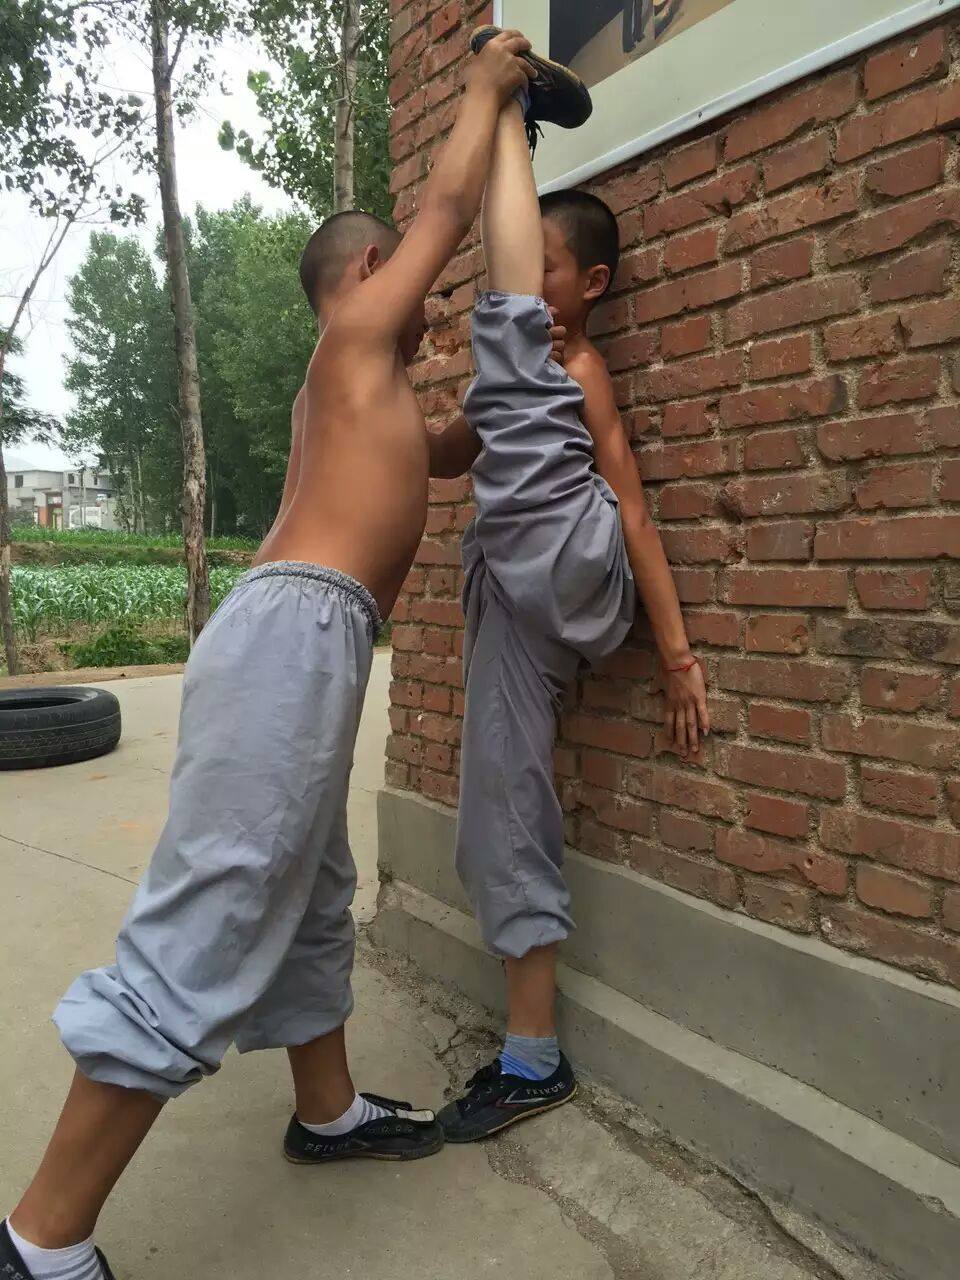 Shaolin Kinder beim dehnen (2013)